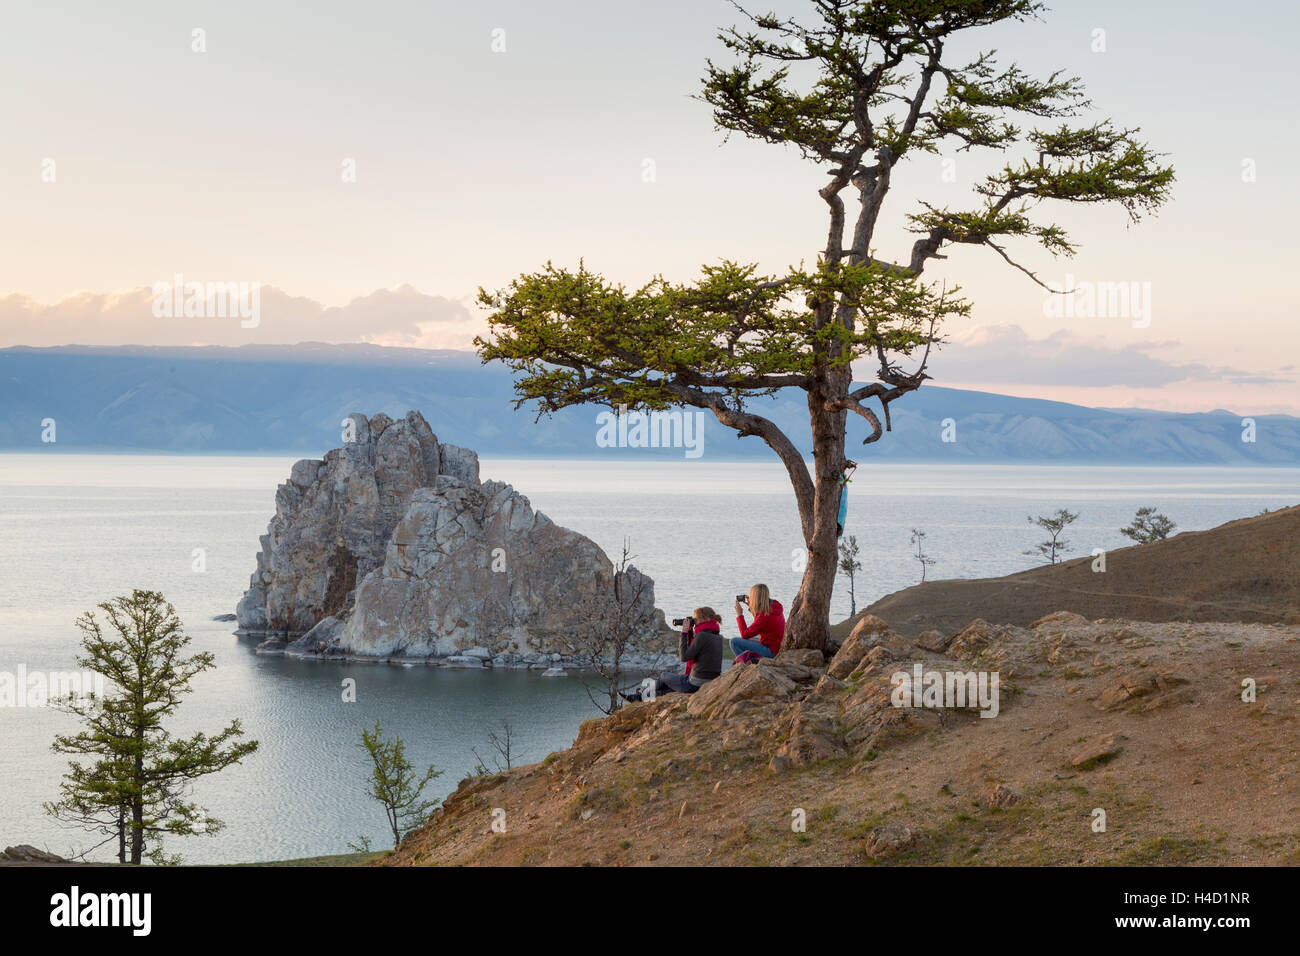 Los turistas observan costa del lago Baikal, el Chamán rock, el árbol de los deseos y el cabo Burhan en la isla Olkhon en Rusia Foto de stock